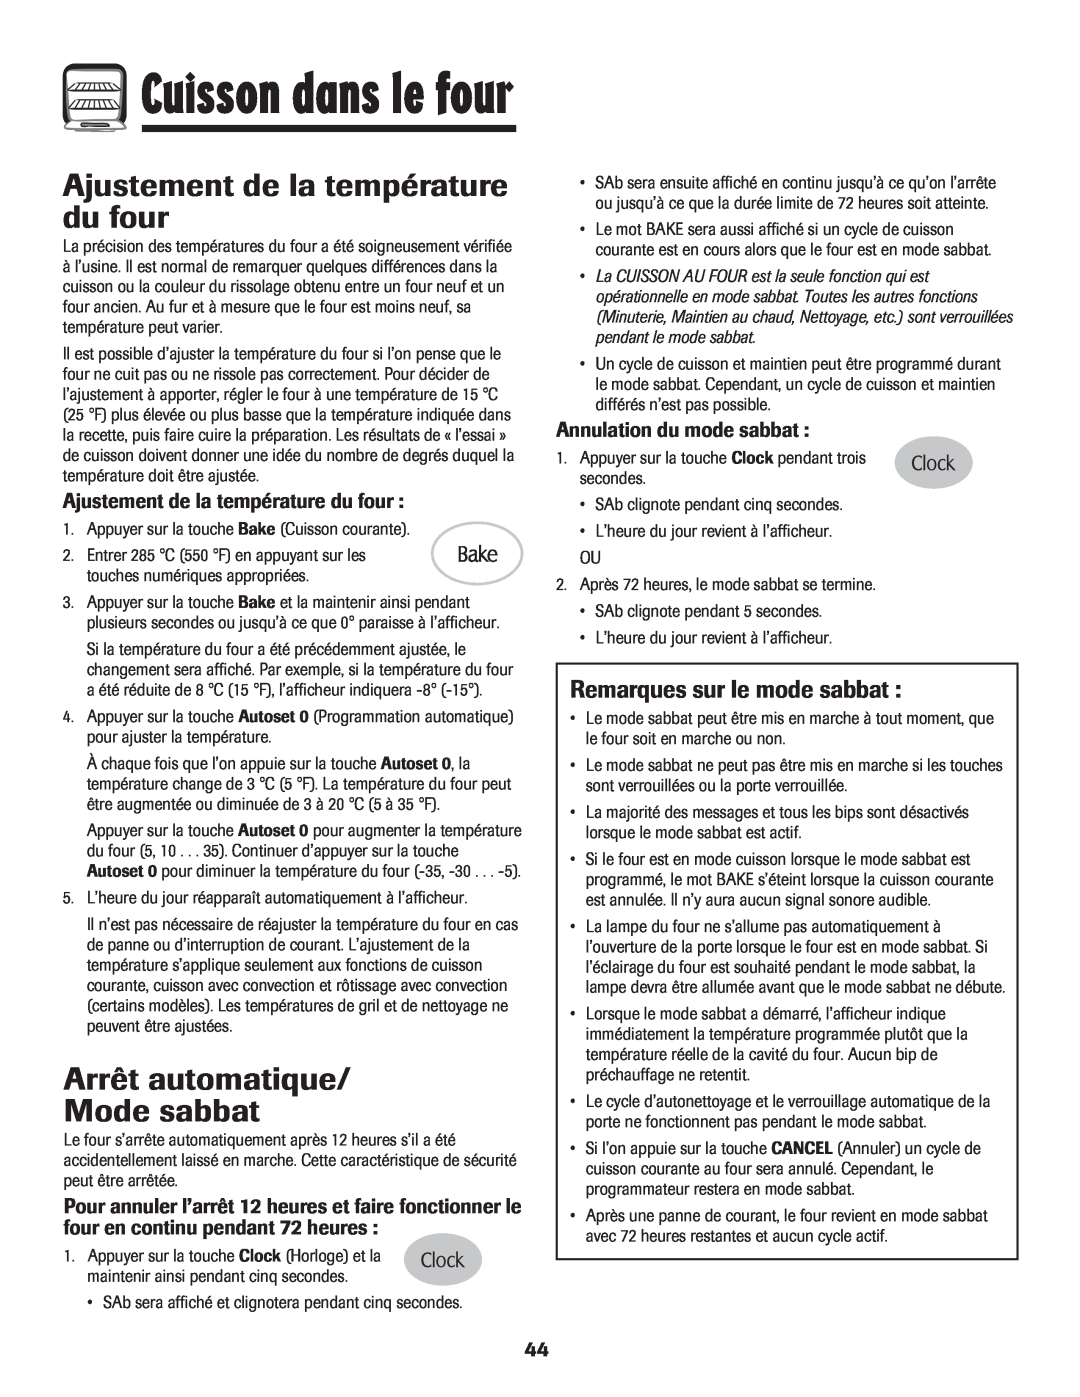 Maytag MER5875RAF manual Ajustement de la température du four, Arrêt automatique Mode sabbat, Remarques sur le mode sabbat 